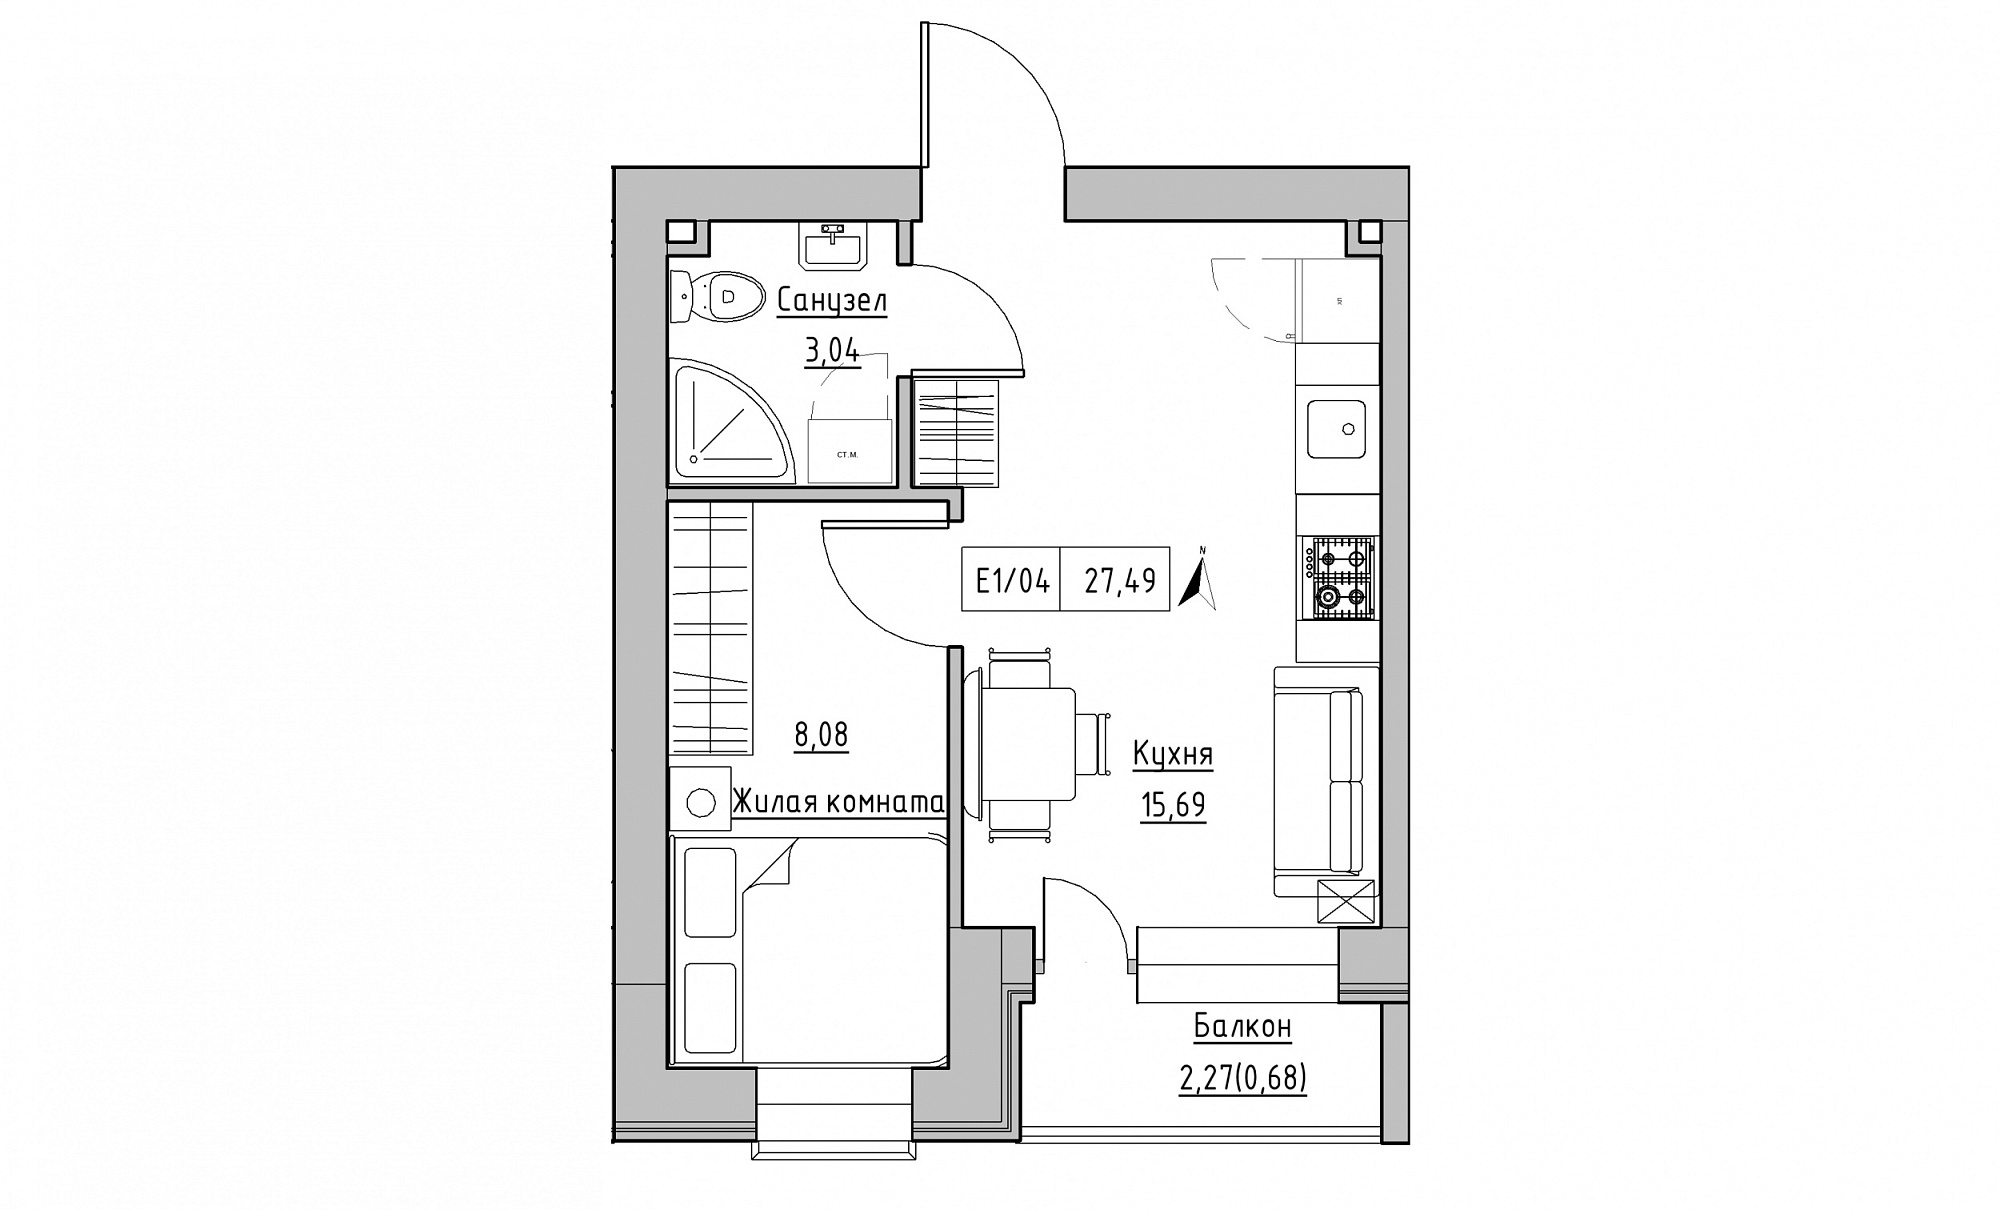 Планировка 1-к квартира площей 27.49м2, KS-015-05/0012.